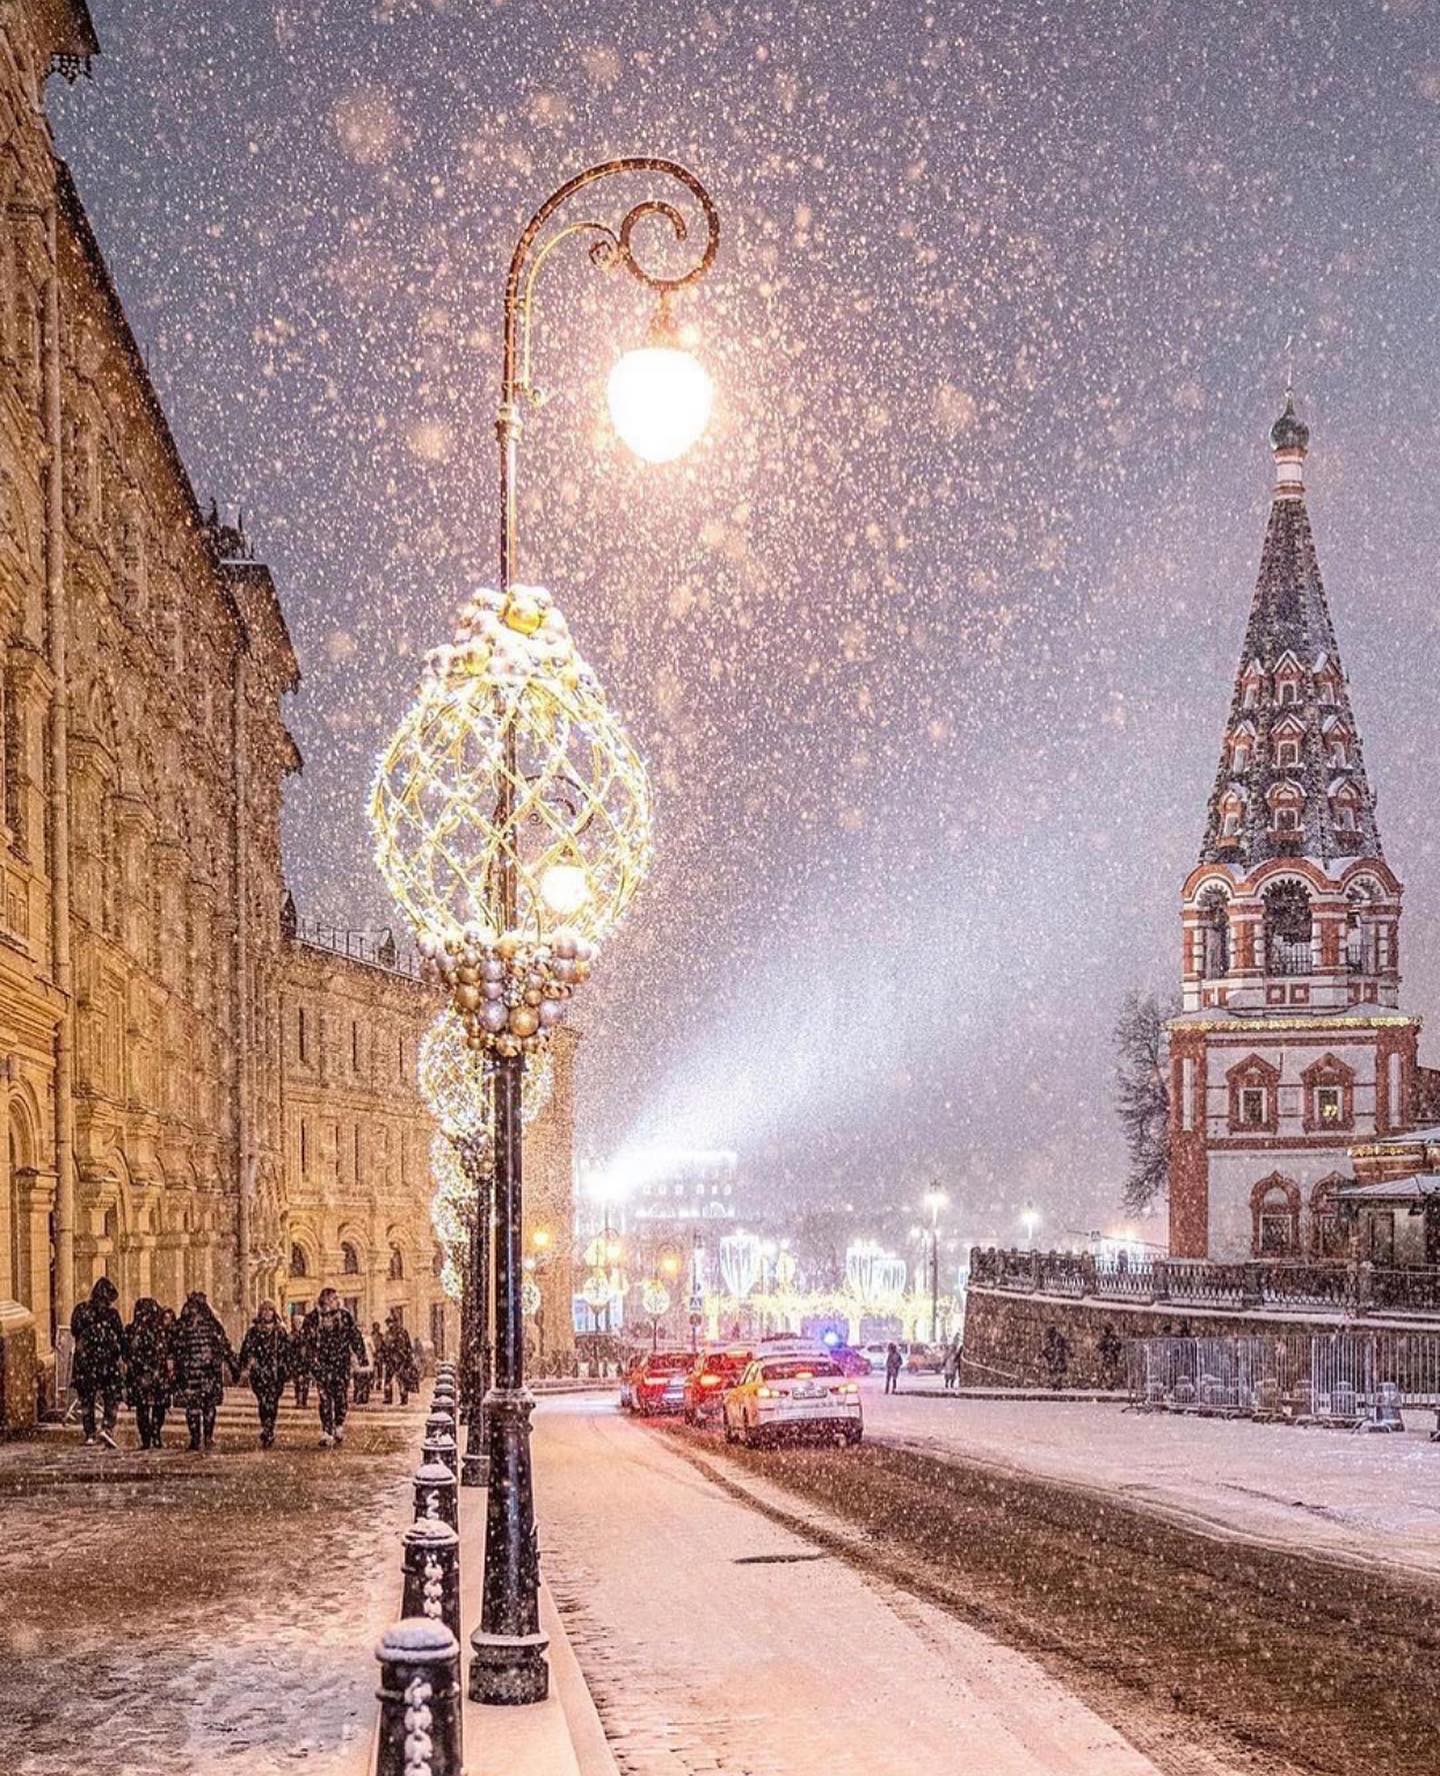 Χριστουγεννιάτικα φώτα της Μόσχας, Ρωσία από την @elena.krizhevskaya #bestintravel #tra... 2